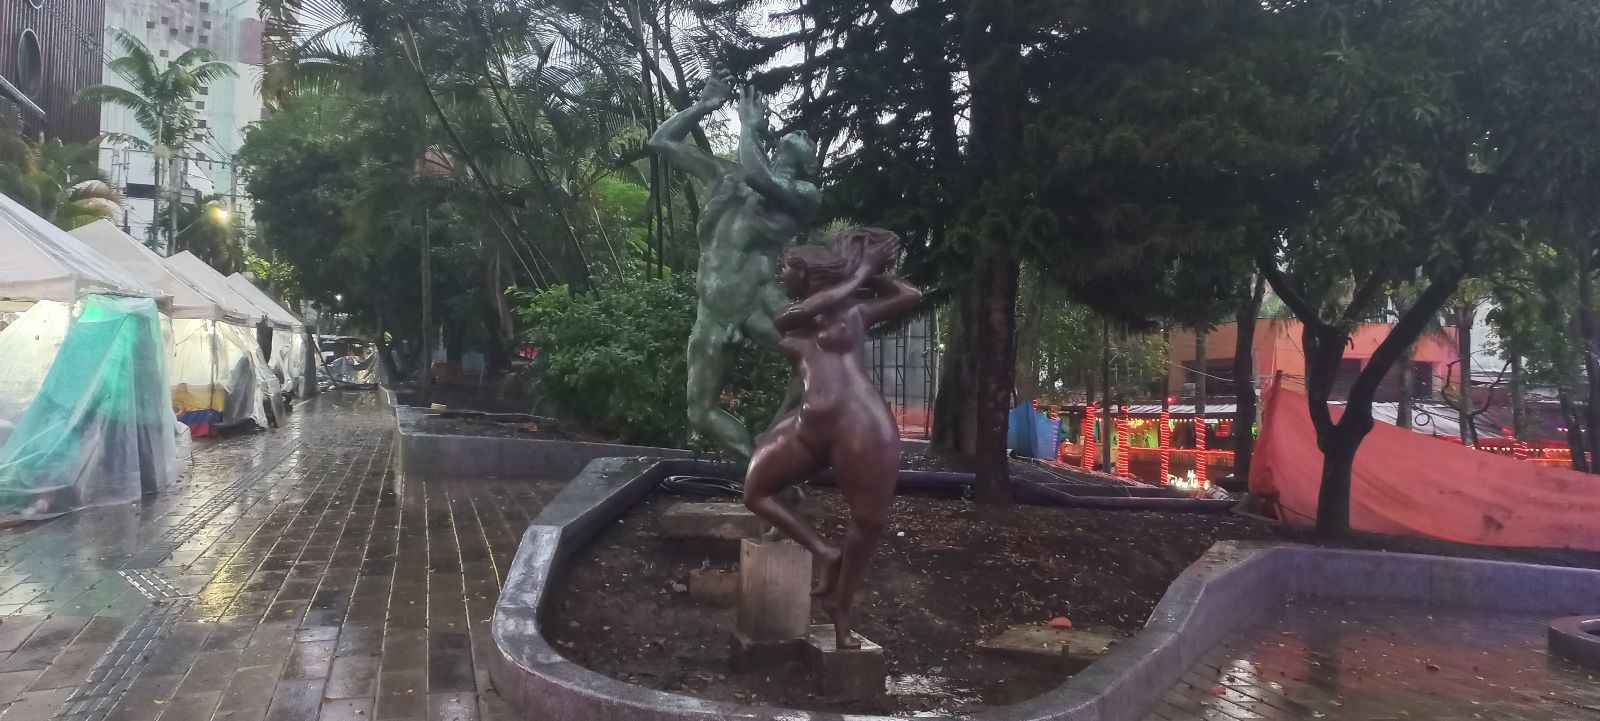 Parque Lleras, Medellín Colombia